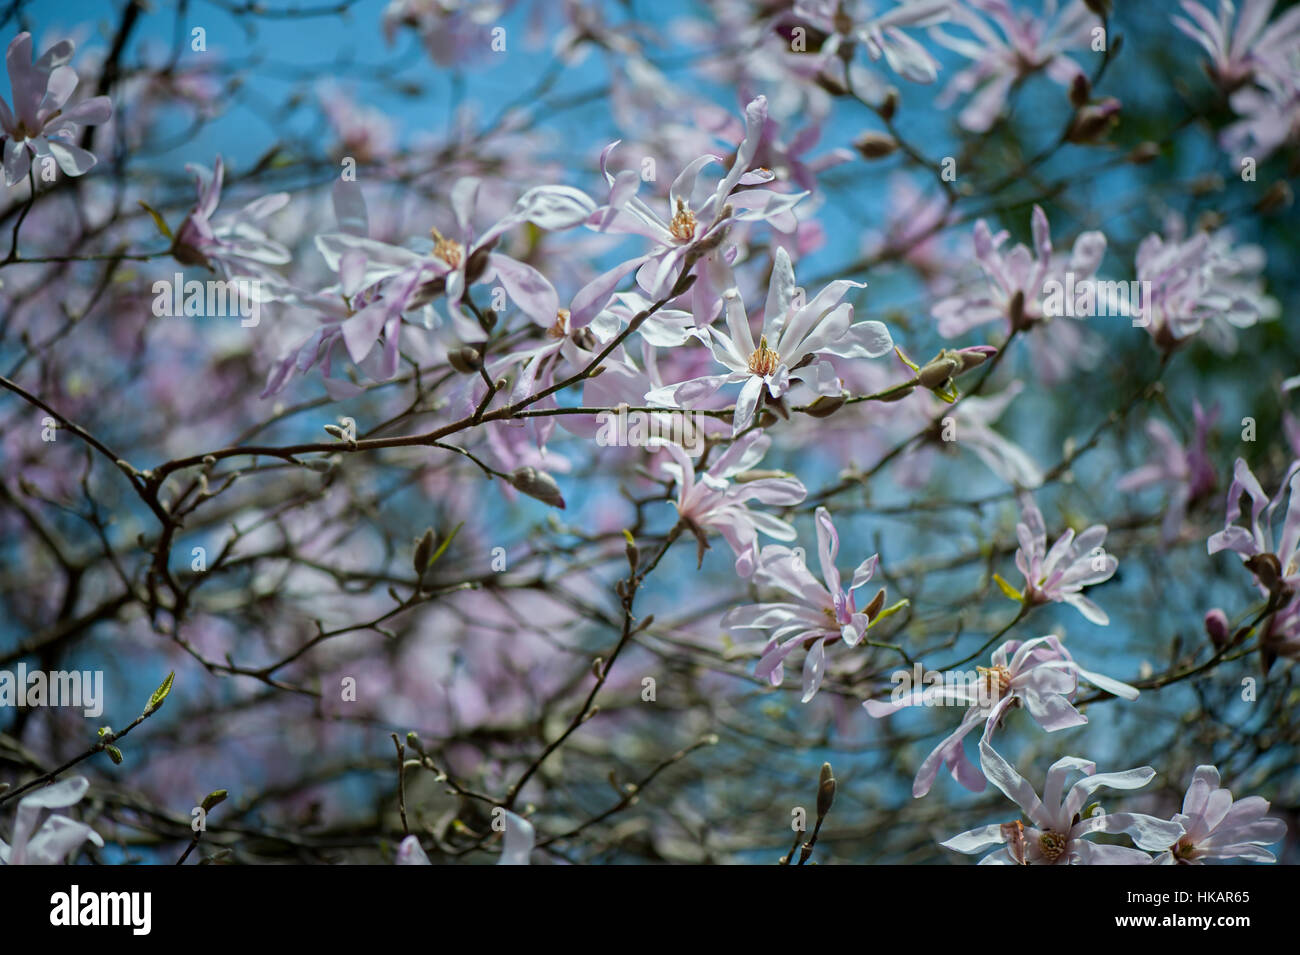 La molla di bellissimi fiori rosa e bianchi di Magnolia stellata noto anche come la stella magnolia, immagine presa contro un cielo blu Foto Stock